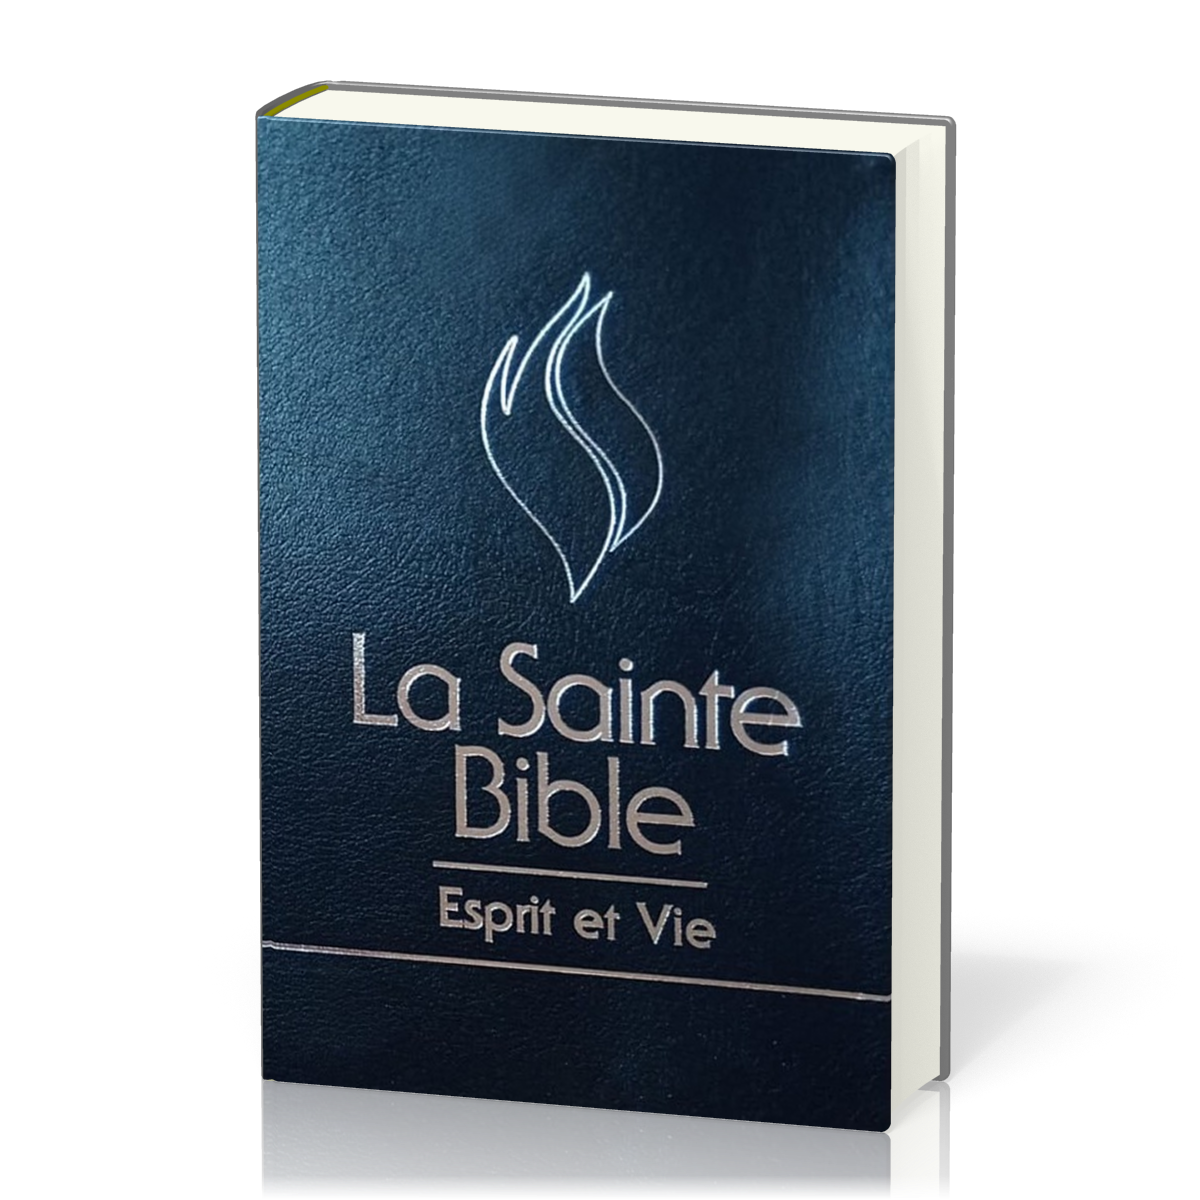 Bible Segond 1910 Esprit et Vie - Deluxe cuir bleu nuit, onglets, tranche argent, onglets, coffret cartonné souple